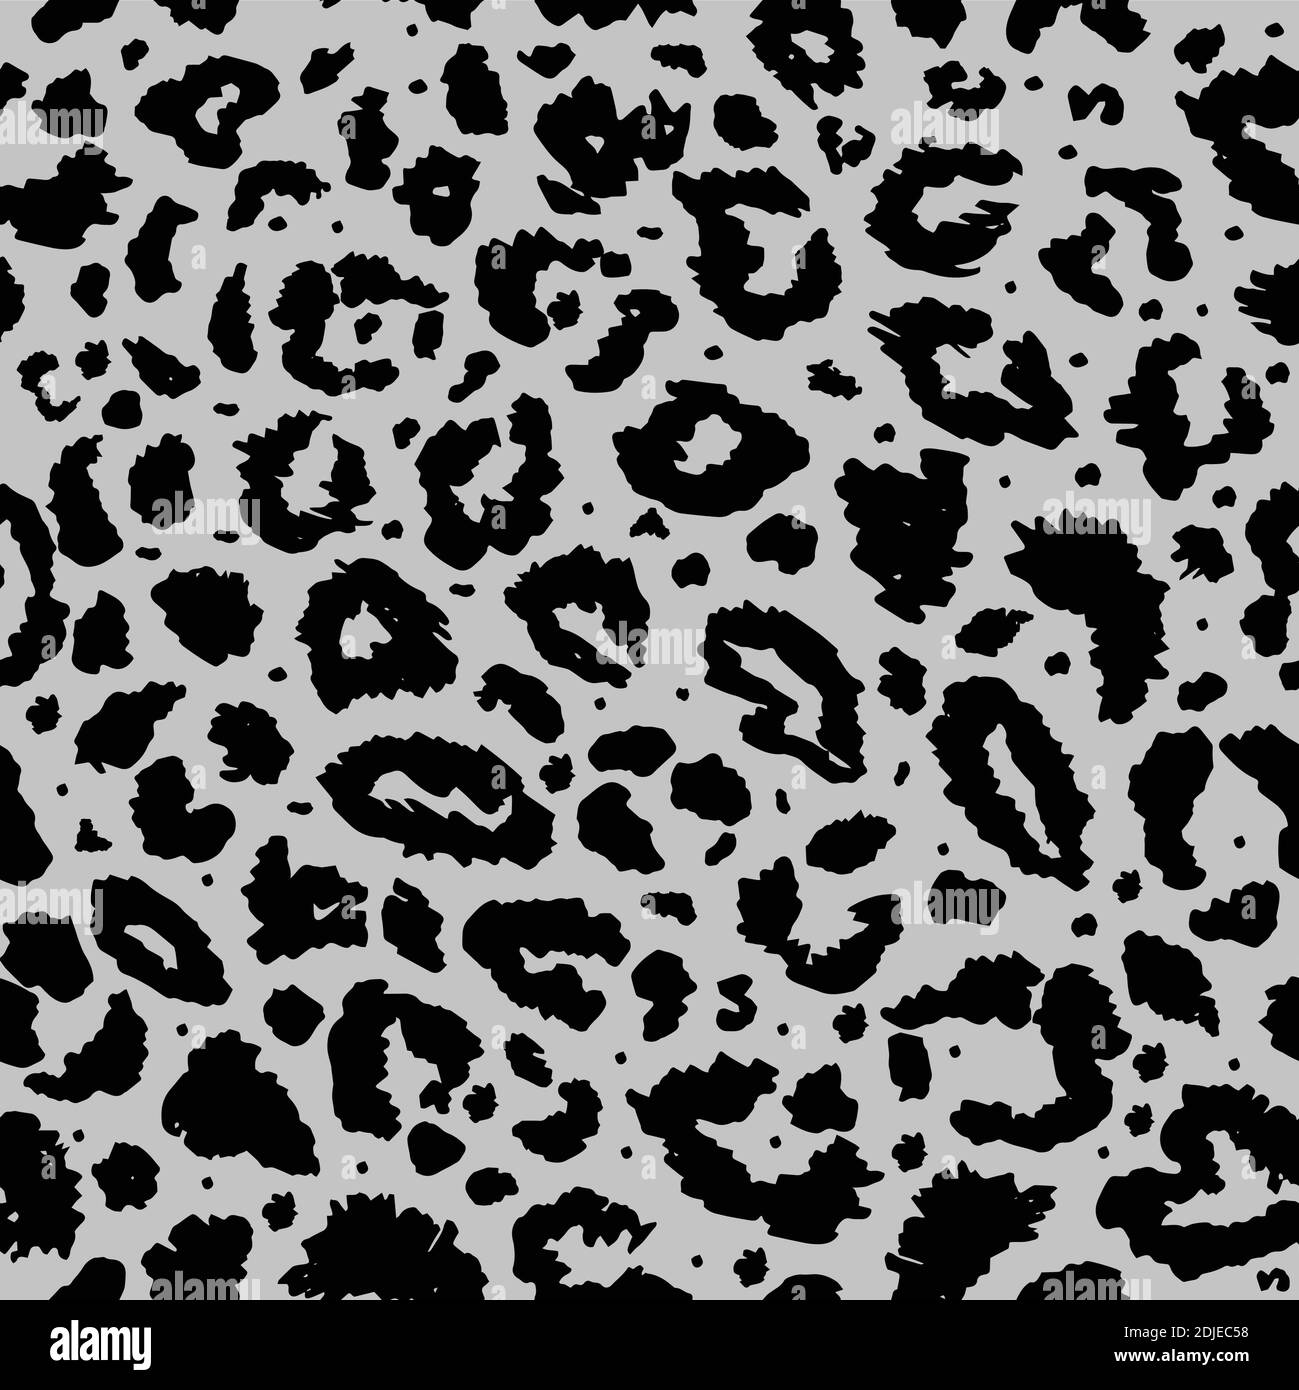 Cheetah Leopard print